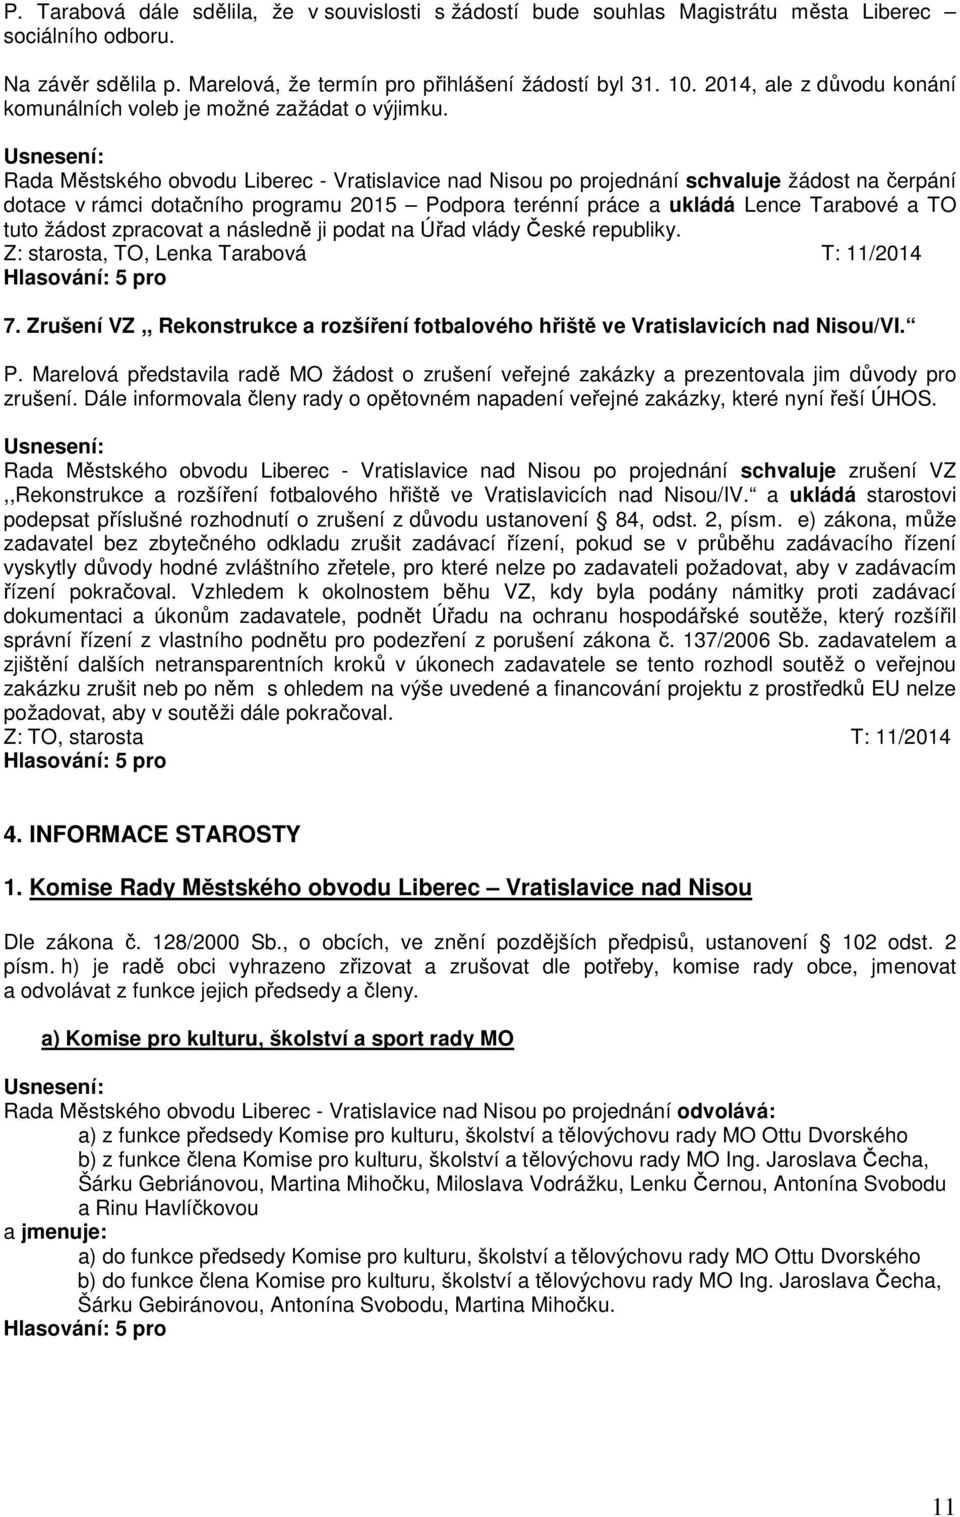 Rada Městského obvodu Liberec - Vratislavice nad Nisou po projednání schvaluje žádost na čerpání dotace v rámci dotačního programu 2015 Podpora terénní práce a ukládá Lence Tarabové a TO tuto žádost